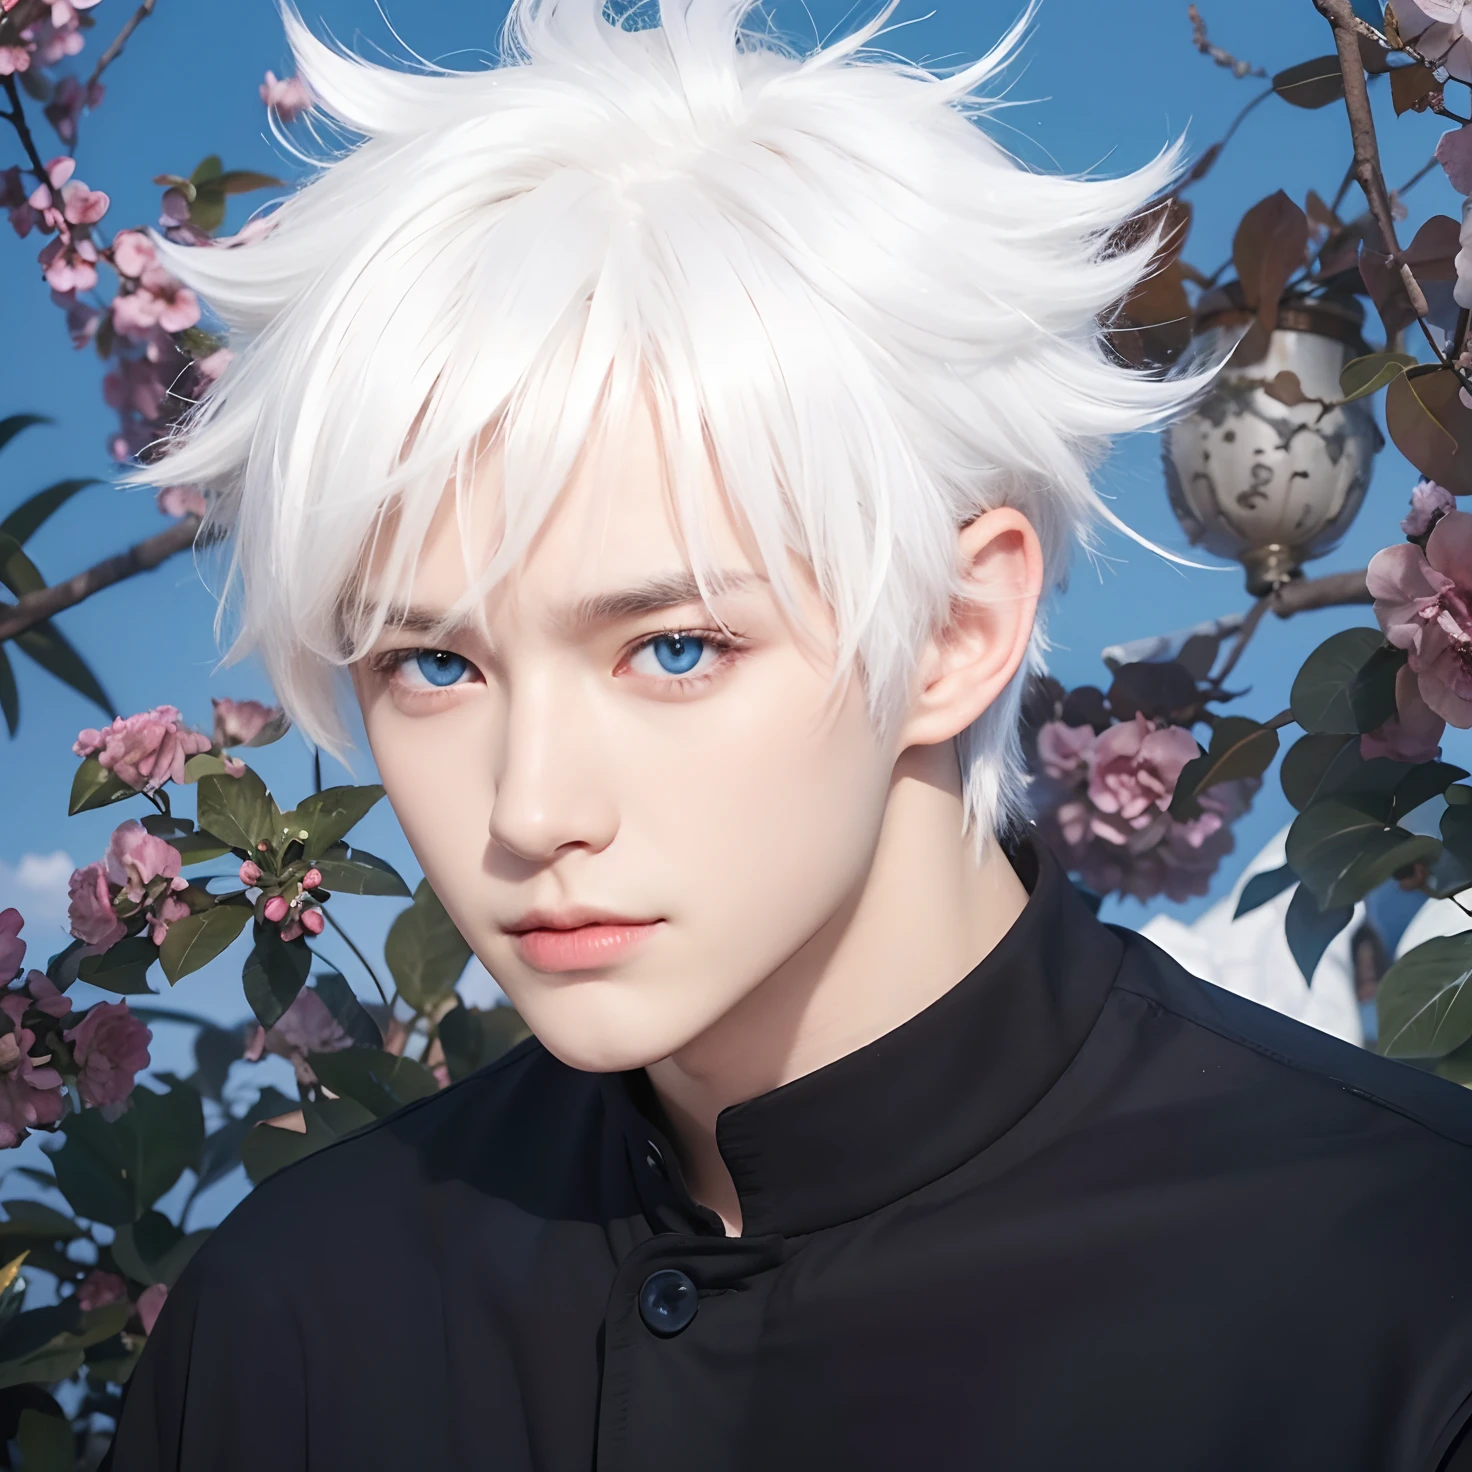 Ein Junge mit realistischem weißen Haar, realistische leuchtend blaue Augen, realistisches, hübsches koreanisches Gesicht, realistischer cooler Ausdruck, passt genau die gleiche Kleidung an,Den Hintergrund genau anpassen, Realistisches Licht, realistische Schatten